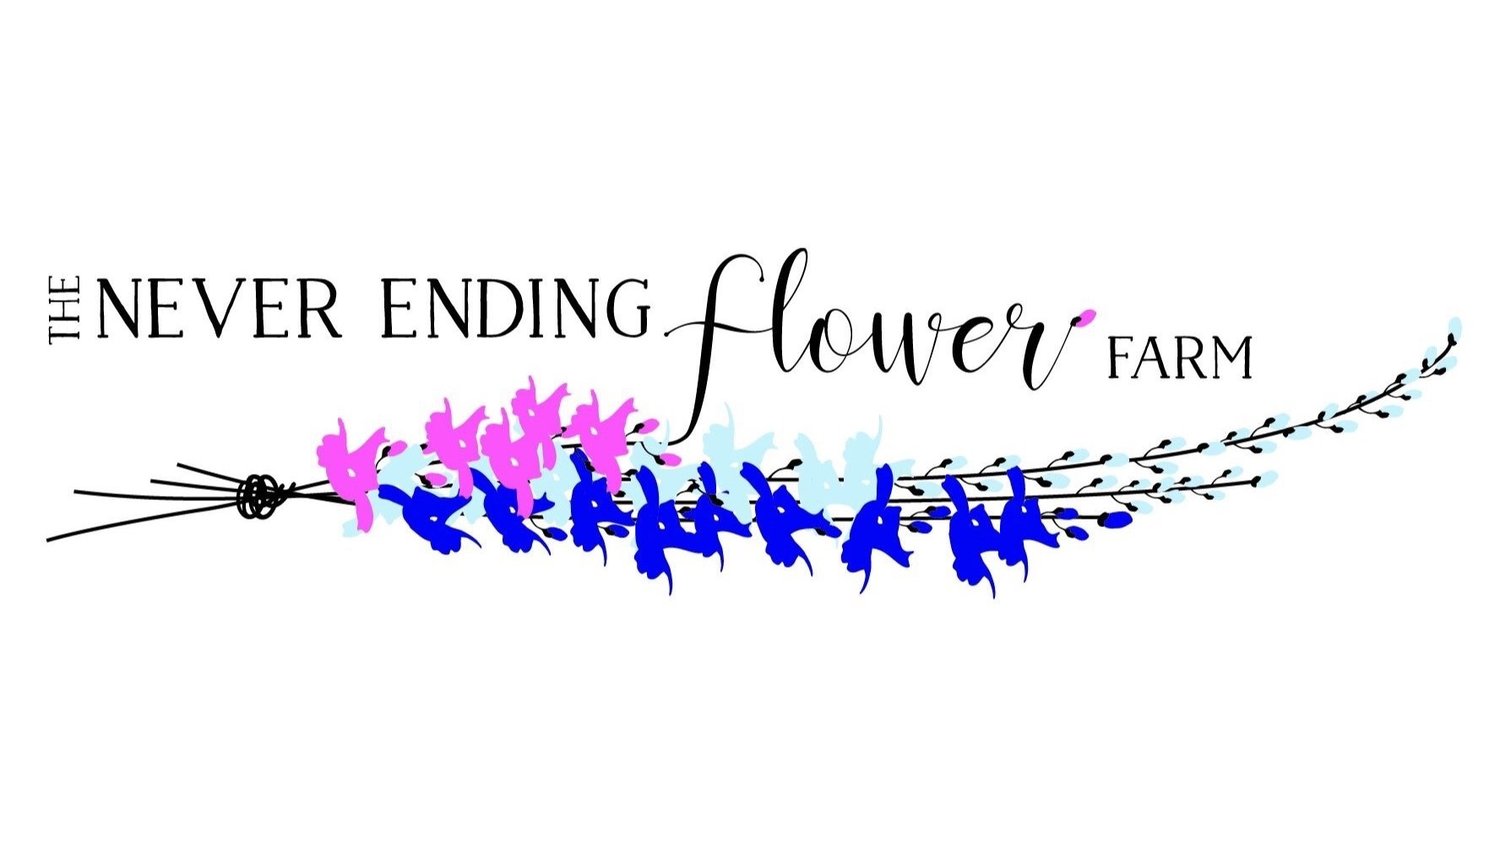 The Never Ending Flower Farm